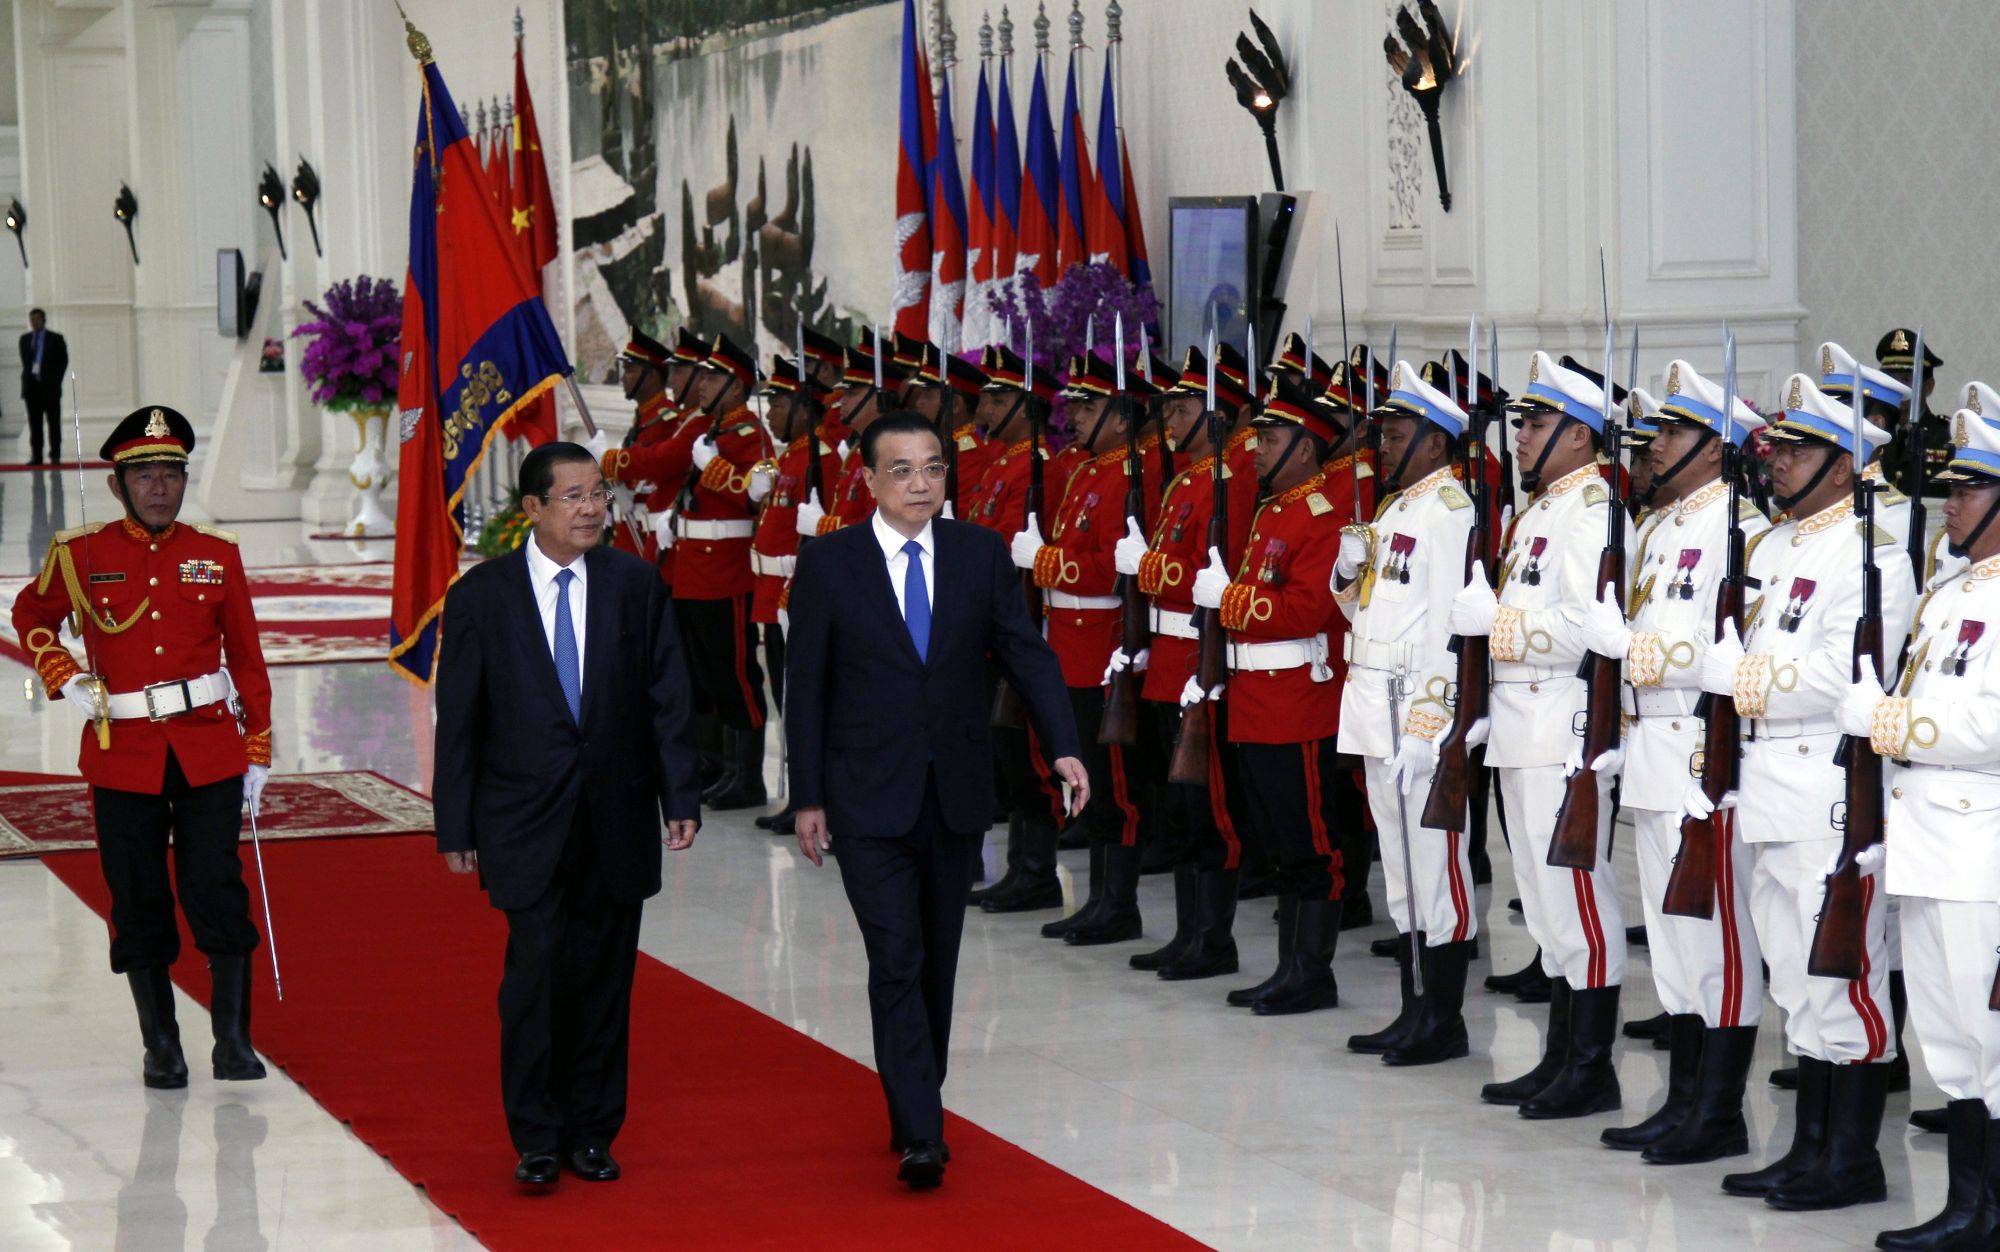 A kínai miniszterlnök Li Keqiang a kambodzsai miniszterelnök, Hun Sen társaságában a Béke-palotában Phnom Penh-ben, Kambodzsában, 2018 január 11-én. Li Keqiang hivatalos látogatáson tartózkodik Kambodzsában, ahol a két ország együttműködéséról szóló dokumentumokat írnak alá. EPA/MAK REMISSA